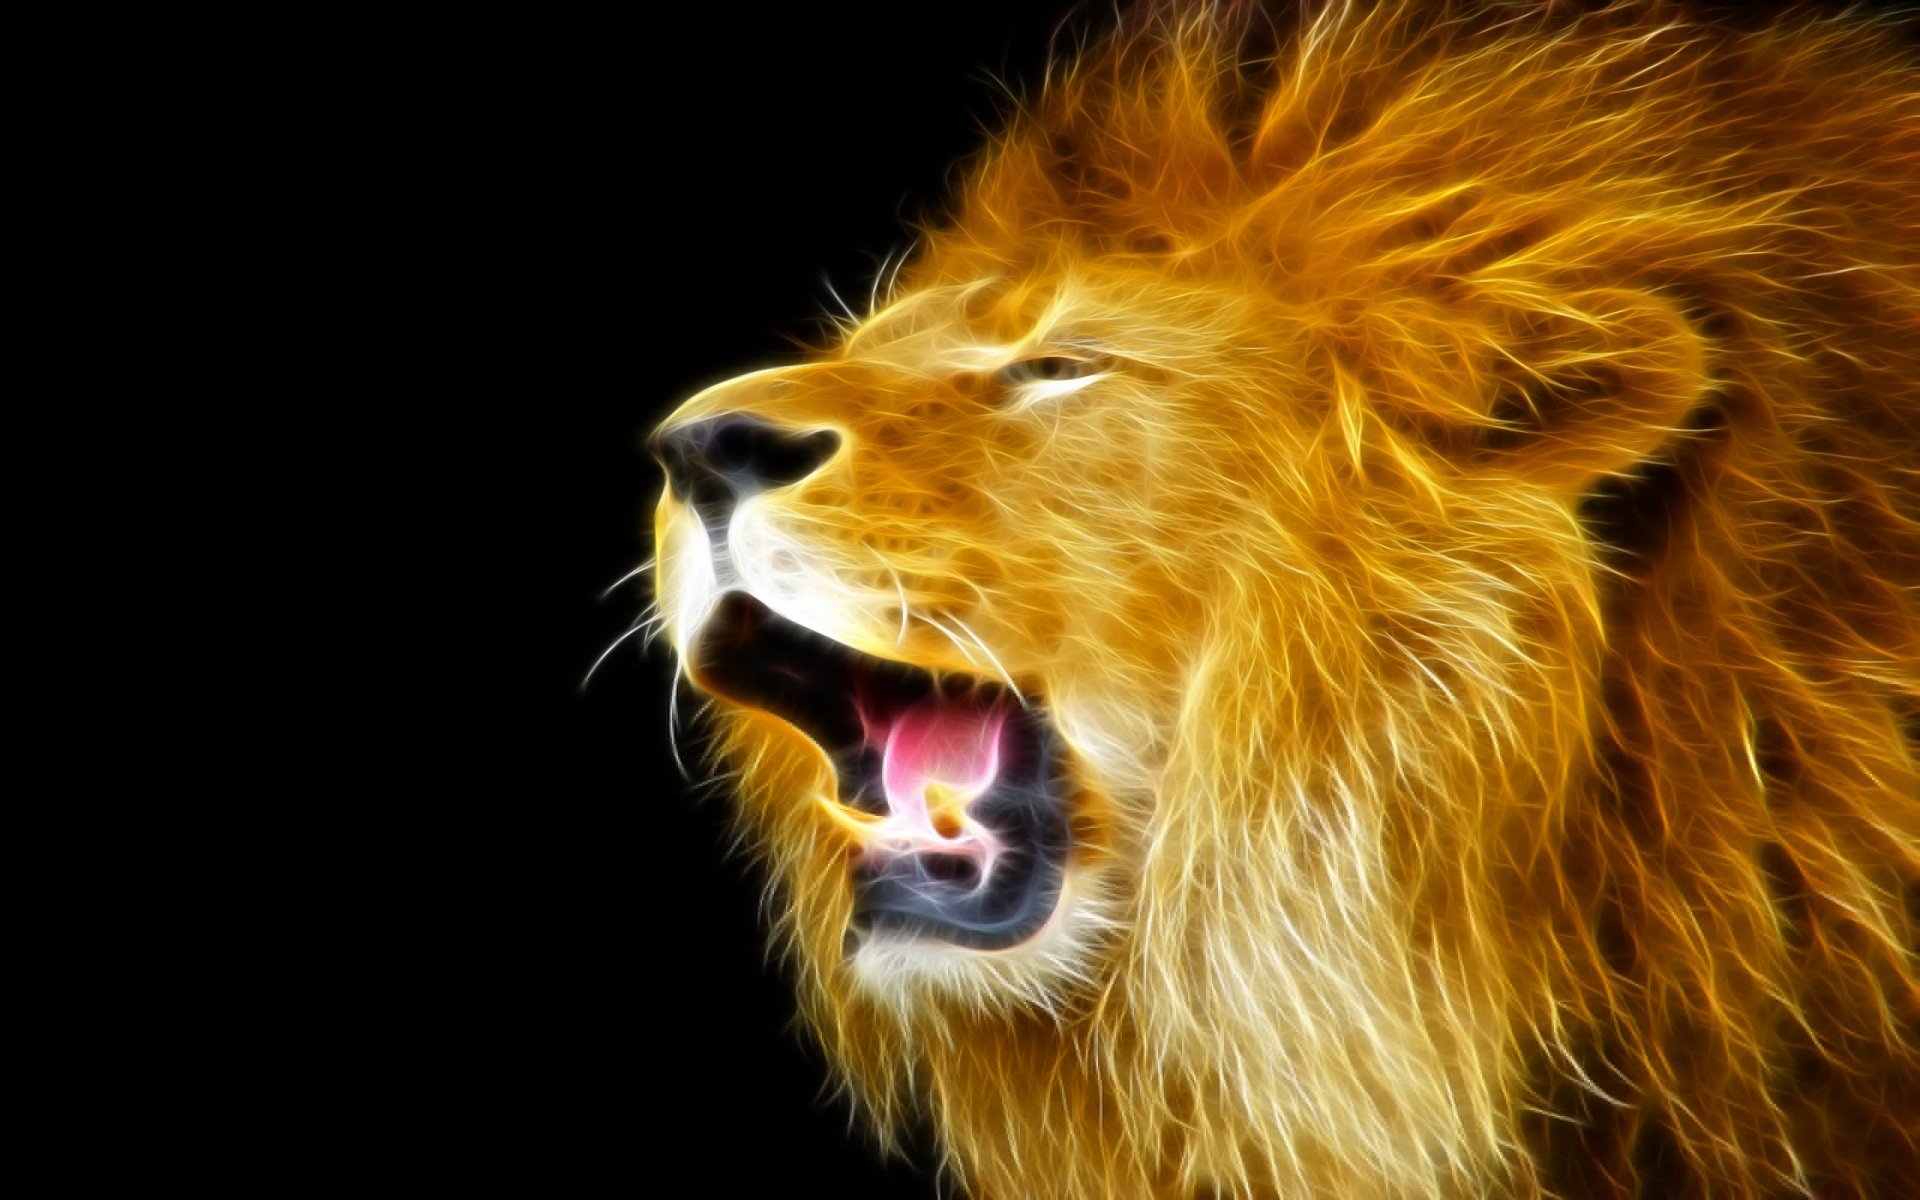 Lion Images Hd For Desktop Download